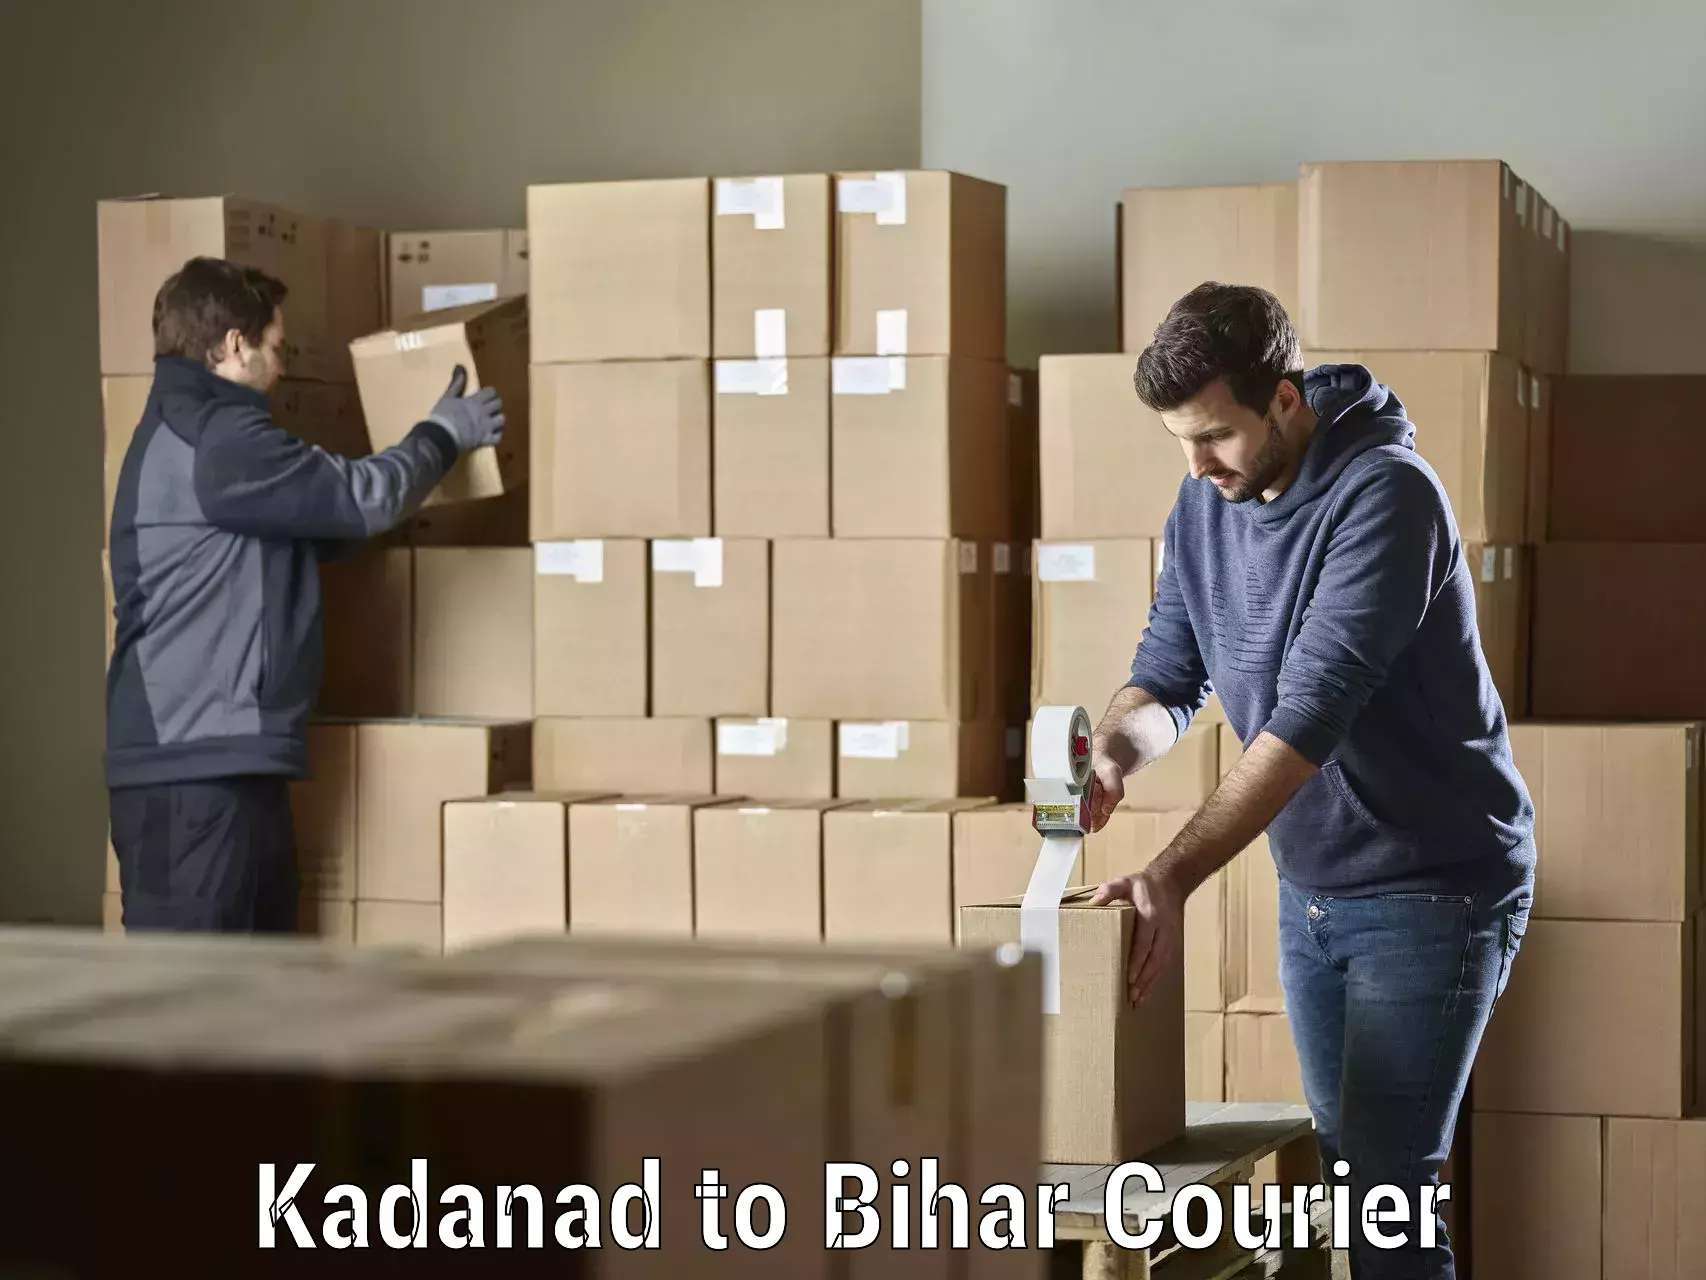 Door-to-door freight service Kadanad to Bhagalpur